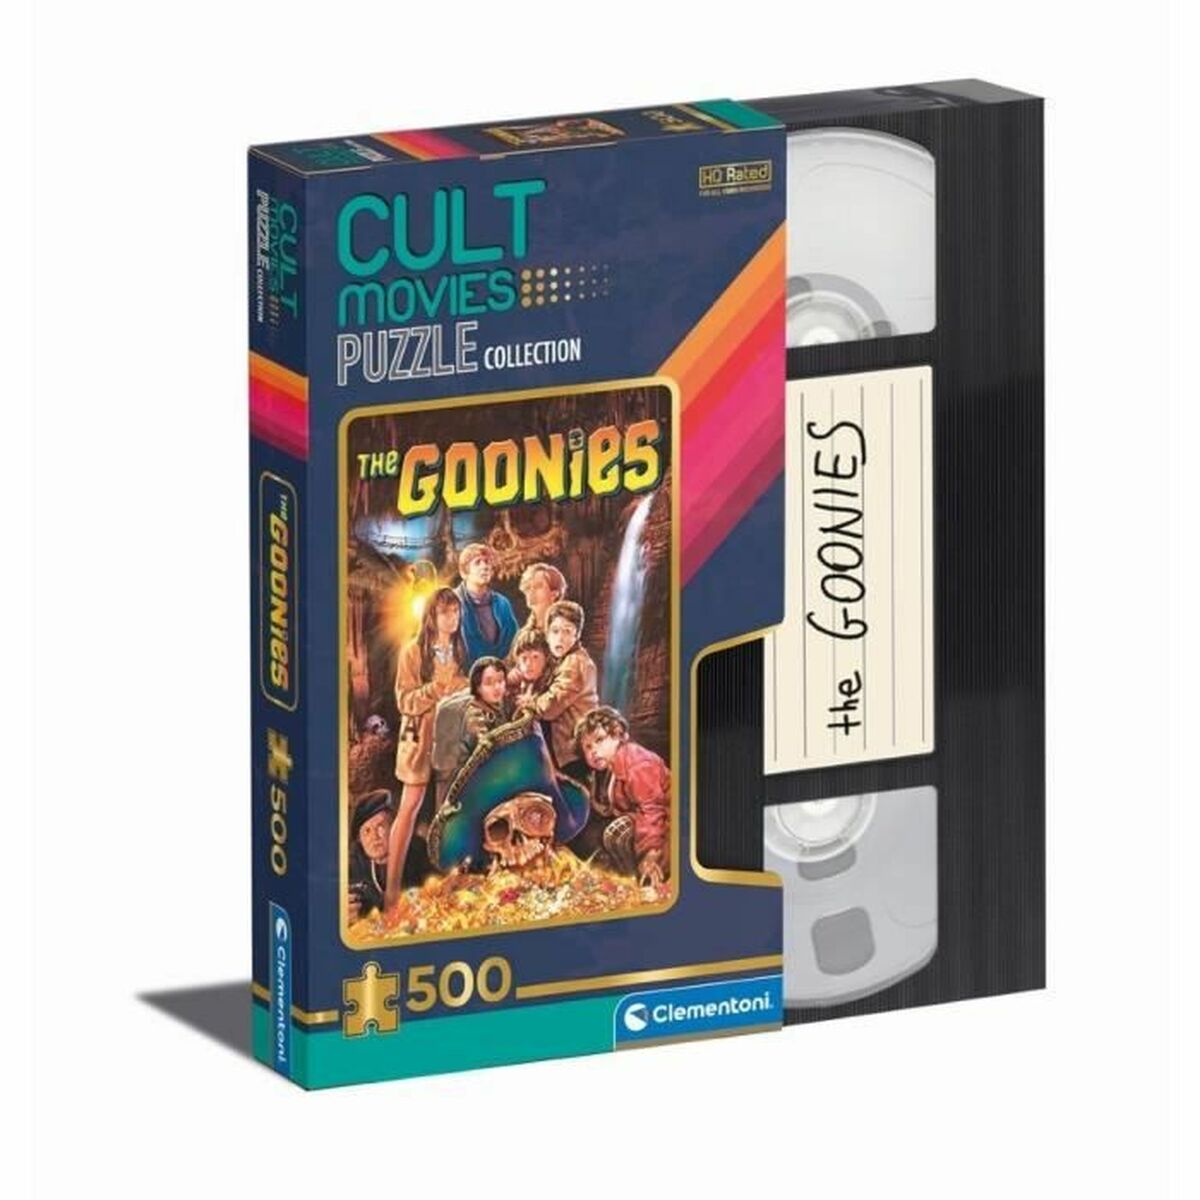 Puzzel Clementoni Cult Movies - The Goonies 500 Onderdelen